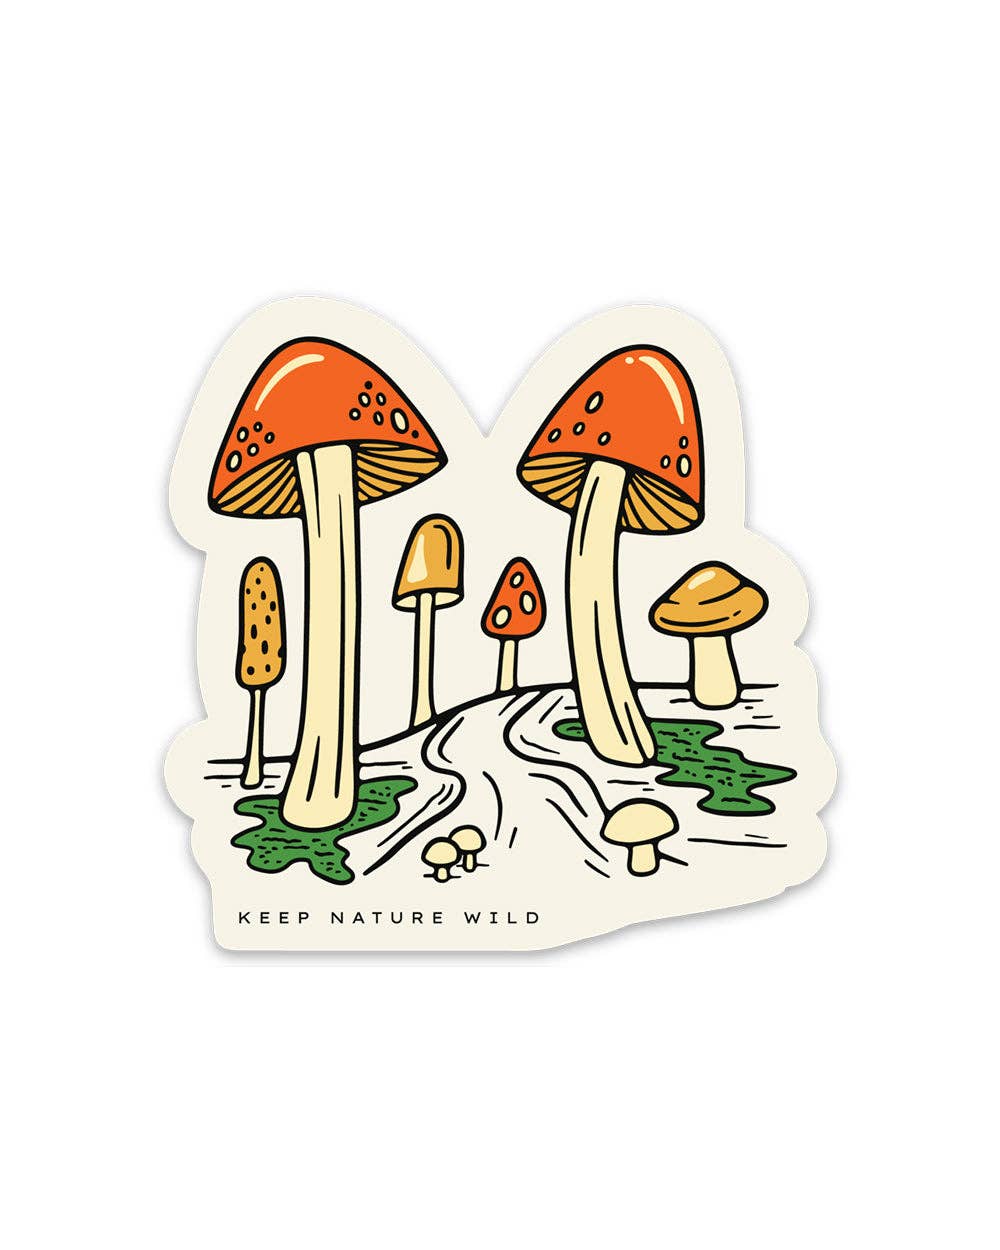 Forest' Sticker